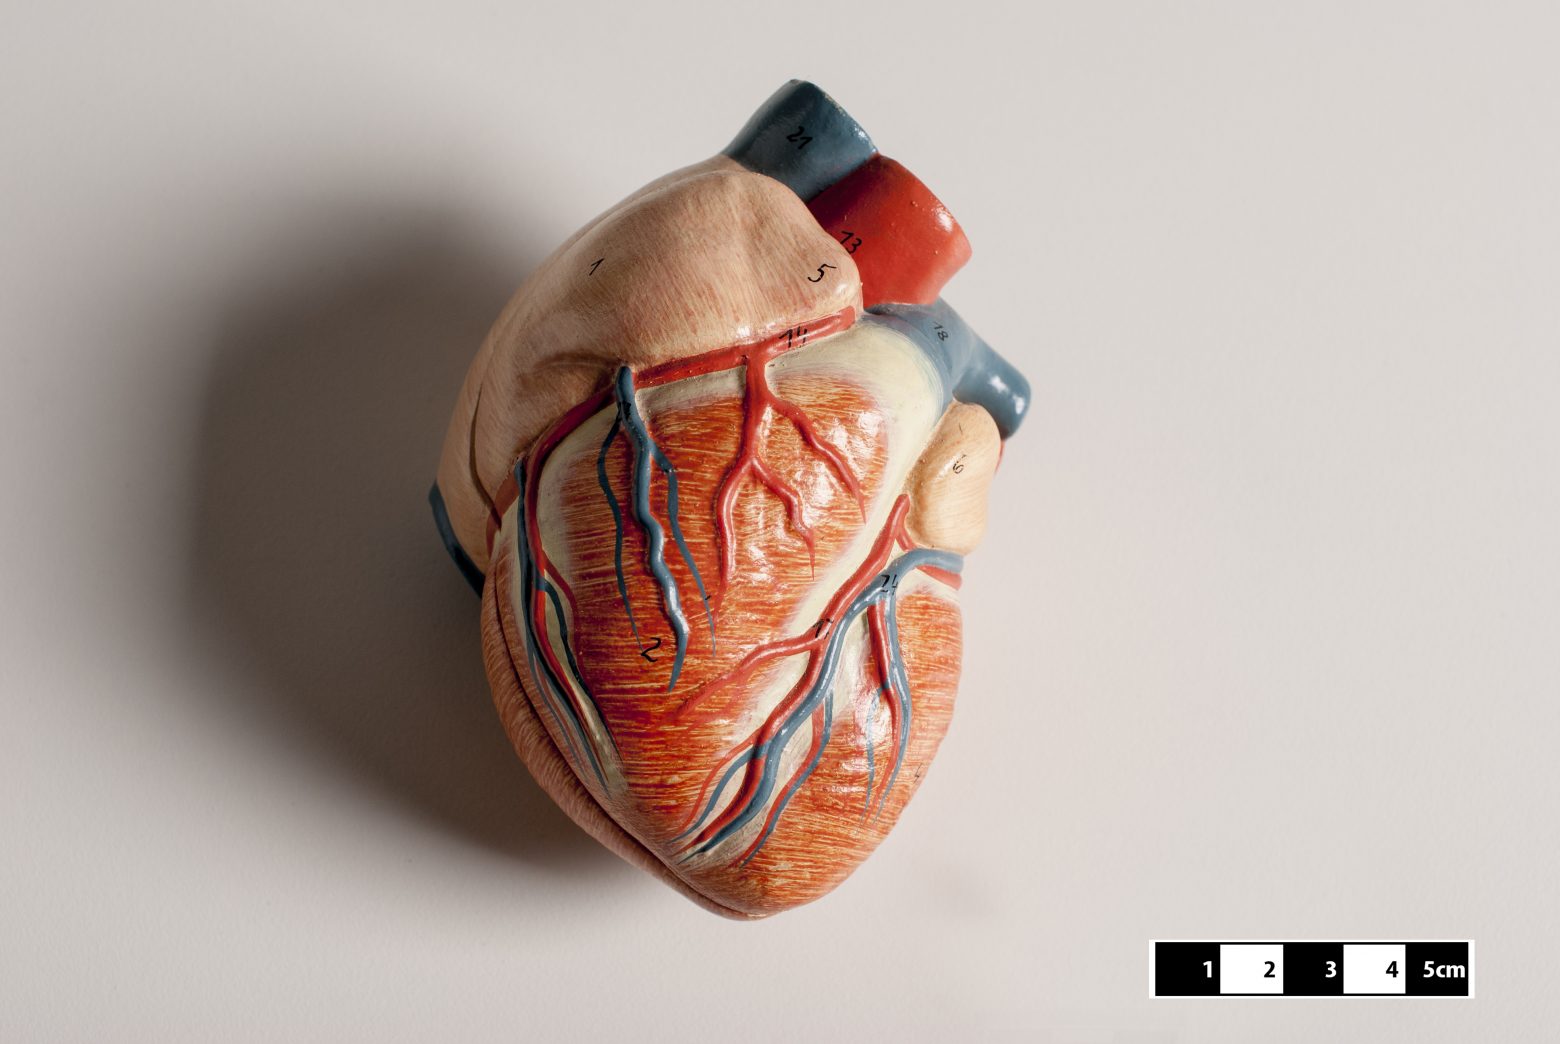 Έμφραγμα: Κύτταρα «αναγέννησαν» την καρδιά μετά από καρδιακό επεισόδιο